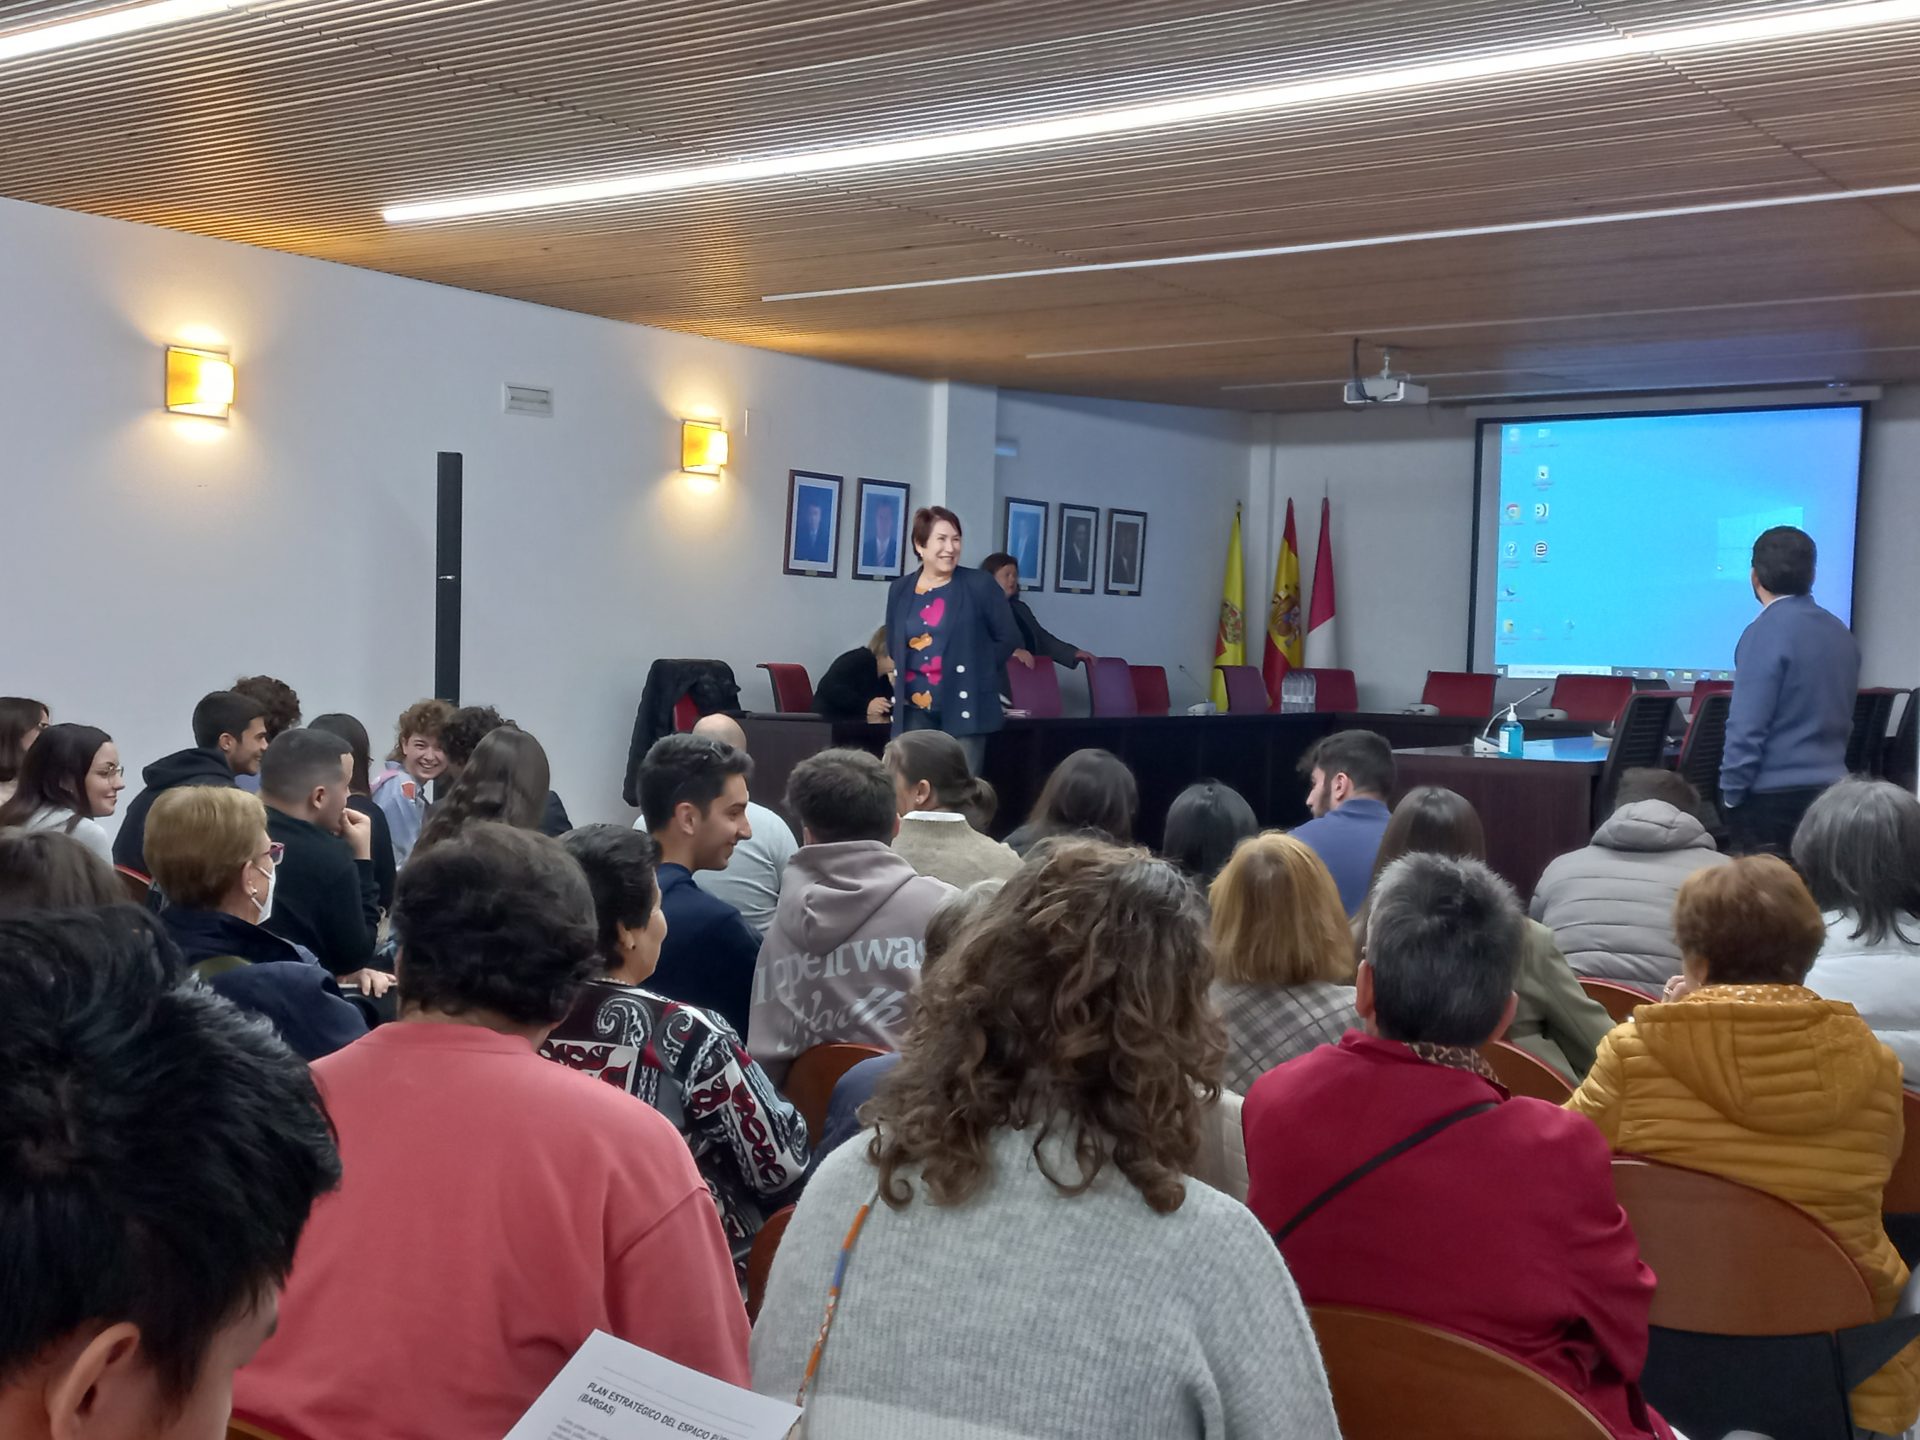 El Ayuntamiento de Bargas celebra un encuentro abierto de estudiantes de arquitectura de la UCLM con vecinos y vecinas de la localidad